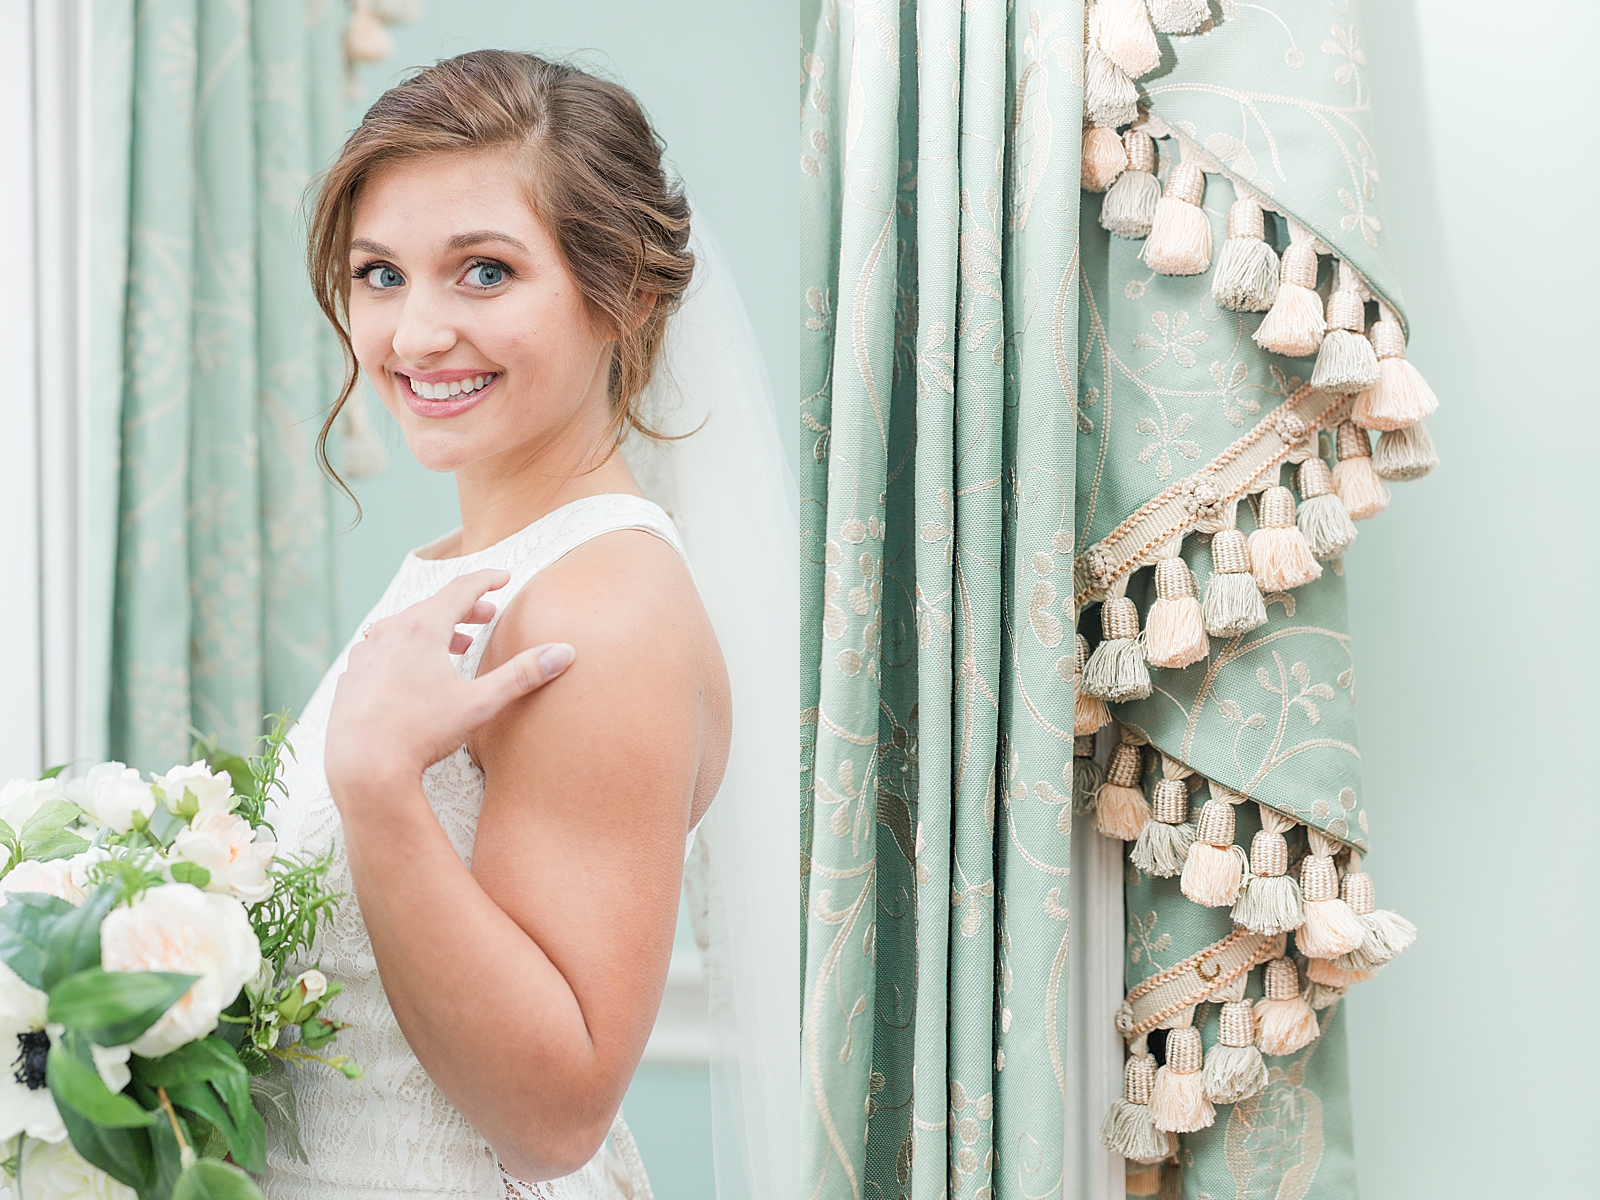 Charleston Bridal Session Bride smiling at camera and detail of drapes photos